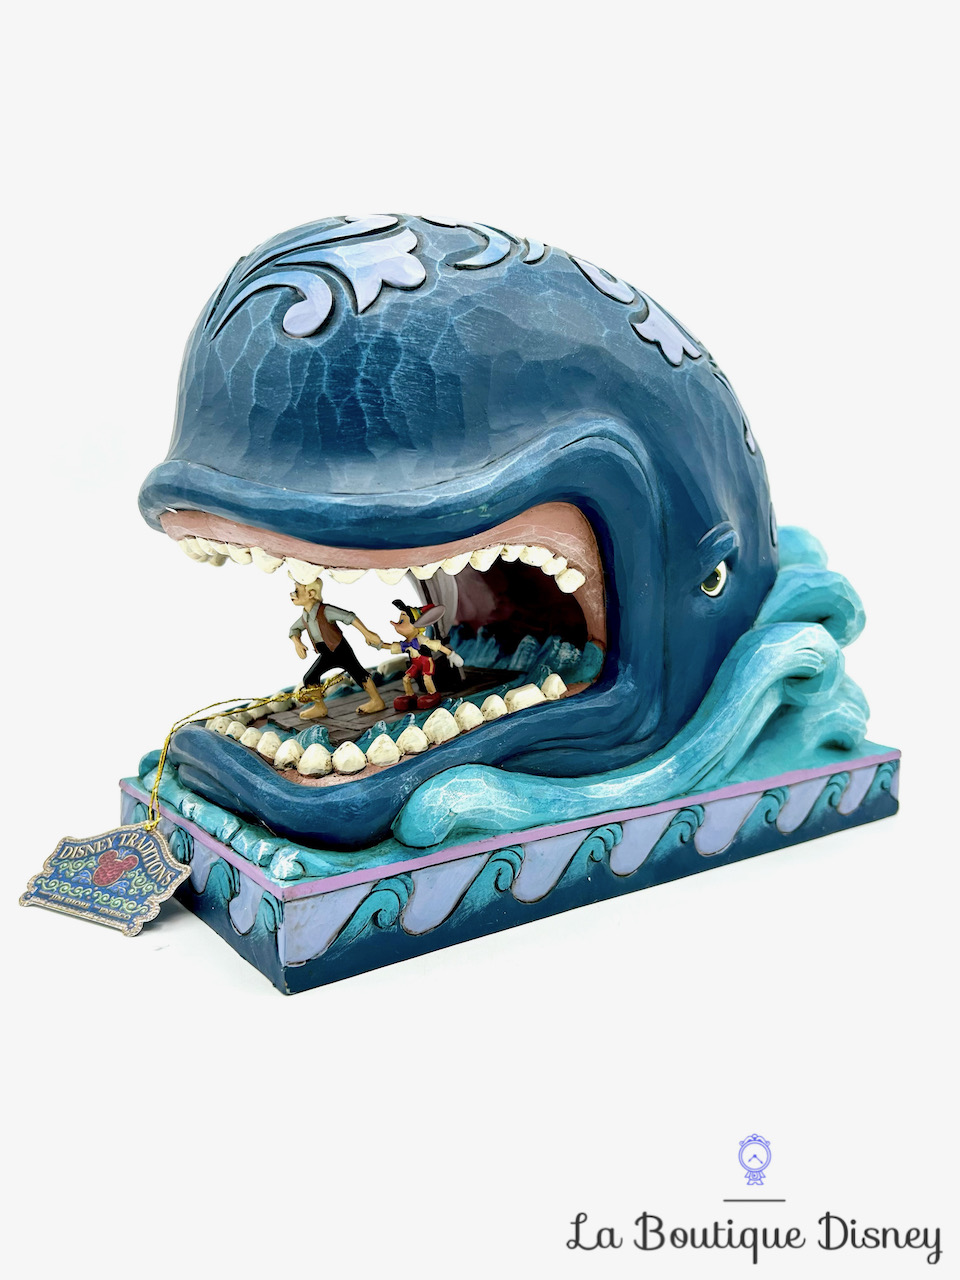 Figurine Jim Shore Un monstre de baleine Pinocchio Disney Traditions Showcase Collection 6005971 Whale of a Whale